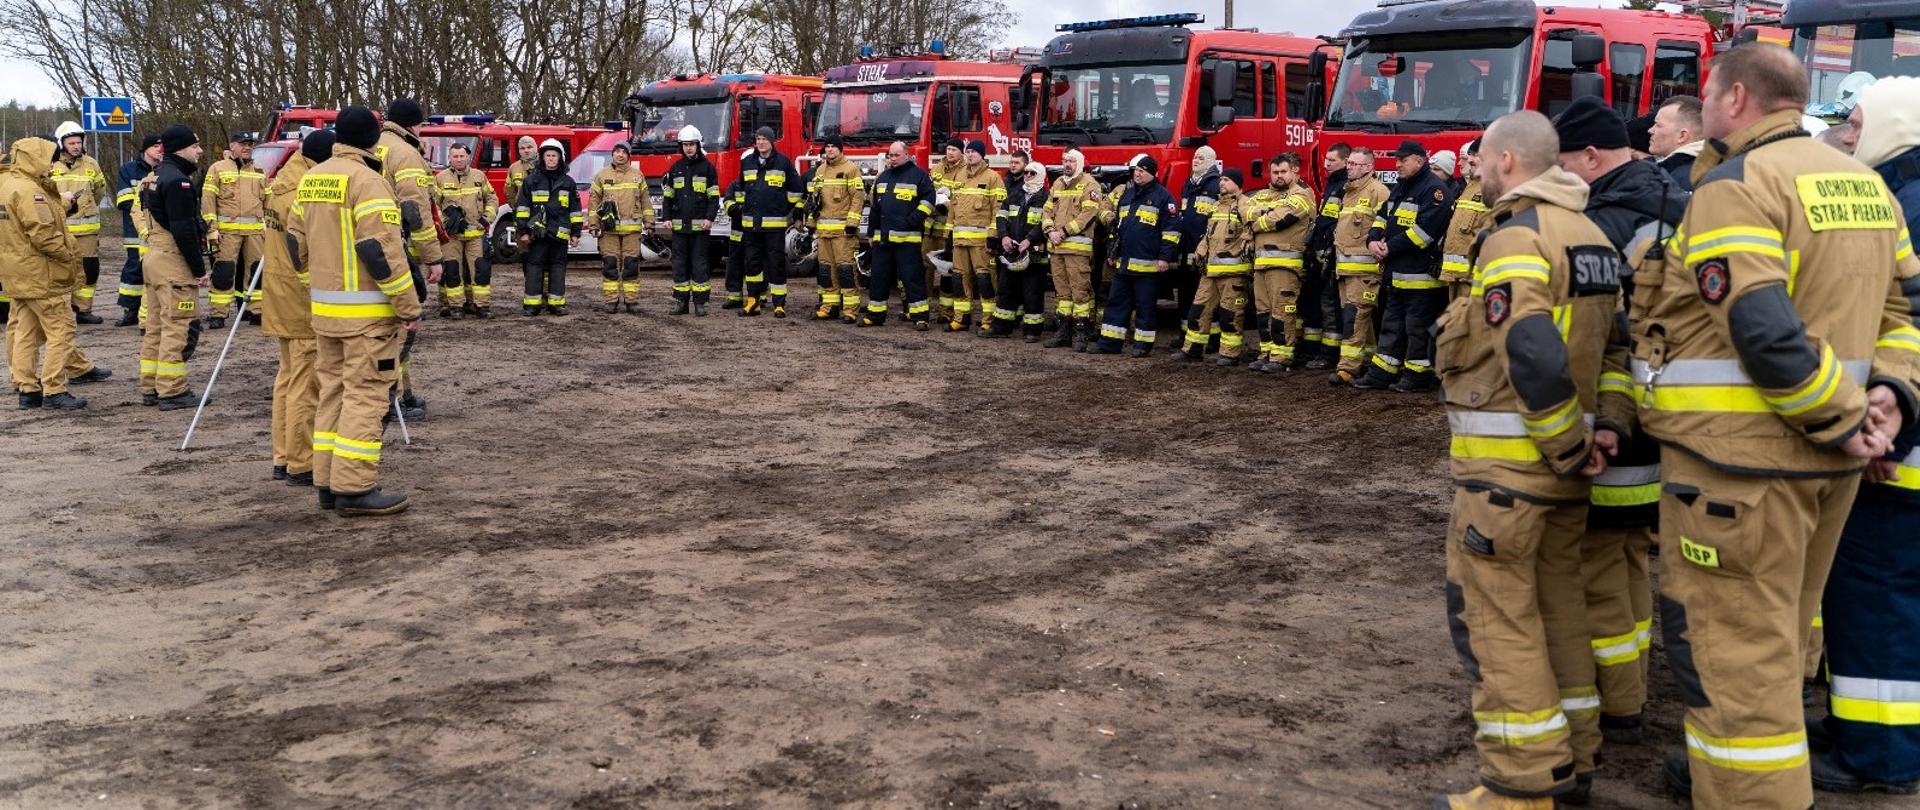 W dniu 18 marca 2024 r. na kompleksie leśnym Nadleśnictwa Wielbark w miejscowości Opaleniec zostały zorganizowane ćwiczenia dla wszystkich Jednostek OSP z terenu Gminy Chorzele oraz Jednostki Ratowniczo-Gaśniczej w Przasnyszu.
Ćwiczenia przeprowadzone w terenie na kompleksie leśnym dały rzeczywisty obraz przygotowania strażaków do prowadzenia akcji gaśniczej. Umożliwiło to wszystkim strażakom sprawdzenie swoich umiejętności nabytych podczas szkoleń oraz możliwości technicznych posiadanego sprzętu i wyposażenia. Podczas ćwiczeń kilkukrotnie zmieniany był scenariusz w celu sprawdzenia umiejętności radzenia sobie w trudnych sytuacjach oraz reagowania na diametralne zmiany sytuacji, które mogą wydarzyć się podczas realnych działań.
Prowadzenie działań gaśniczych w kompleksach leśnych każdorazowo niesie za sobą poważne wyzwanie. Największą trudnością z jaką zmagają się strażacy w sytuacji wystąpienia takich zdarzeń, jest zapewnienie odpowiedniej ilości środka gaśniczego do skutecznego przeprowadzenia akcji gaśniczej. Strażacy ćwiczyli praktyczną możliwość dostarczania wody metodą przepompowywania, tworząc tym samym magistralę zasilającą na odległość prawie dwóch kilometrów.
Cele szczegółowe ćwiczeń obejmowały:
• sprawdzenie terenu, dróg dojazdowych i przeciwpożarowych,
• sprawdzenie możliwości rozwinięcia odcinków bojowych oraz użycia sprzętu podczas działań,
• lokalizacja potencjalnych źródeł wody oraz zbiorników ppoż.,
• sprawdzenie możliwości poboru wody do celów gaśniczych i dostarczanie jej na duże odległości,
• sprawdzenie wyposażenia i sprawności sprzętu będącego na wyposażeniu Jednostek Ochrony Przeciwpożarowej,
• wykorzystanie map oraz dokumentacji pomocniczej,
• sprawdzenie warunków i skuteczności prowadzenia łączności na terenie akcji oraz ze Stanowiskiem Kierowania,
• współpraca z leśniczymi z danego terenu.
W ćwiczeniach udział brały:
• JRG Przasnysz
• OSP Zaręby
• OSP Chorzele
• OSP Budki
• OSP Krukowo
• OSP Rycice
• OSP Nowa Wieś
• OSP Pruskołęka
• OSP Raszujka
• OSP Duczymin
• OSP Rembielin
• OSP Zdziwój Stary
• OSP Łaz
________________________________________
Opracował: Oficer Prasowy Komendanta Powiatowego PSP w Przasnyszu: kpt. Piotr Kuligowski.
Zdjęcia: st.kpt.Michał Wiśniewski, str. Szymon Wątkowski.
